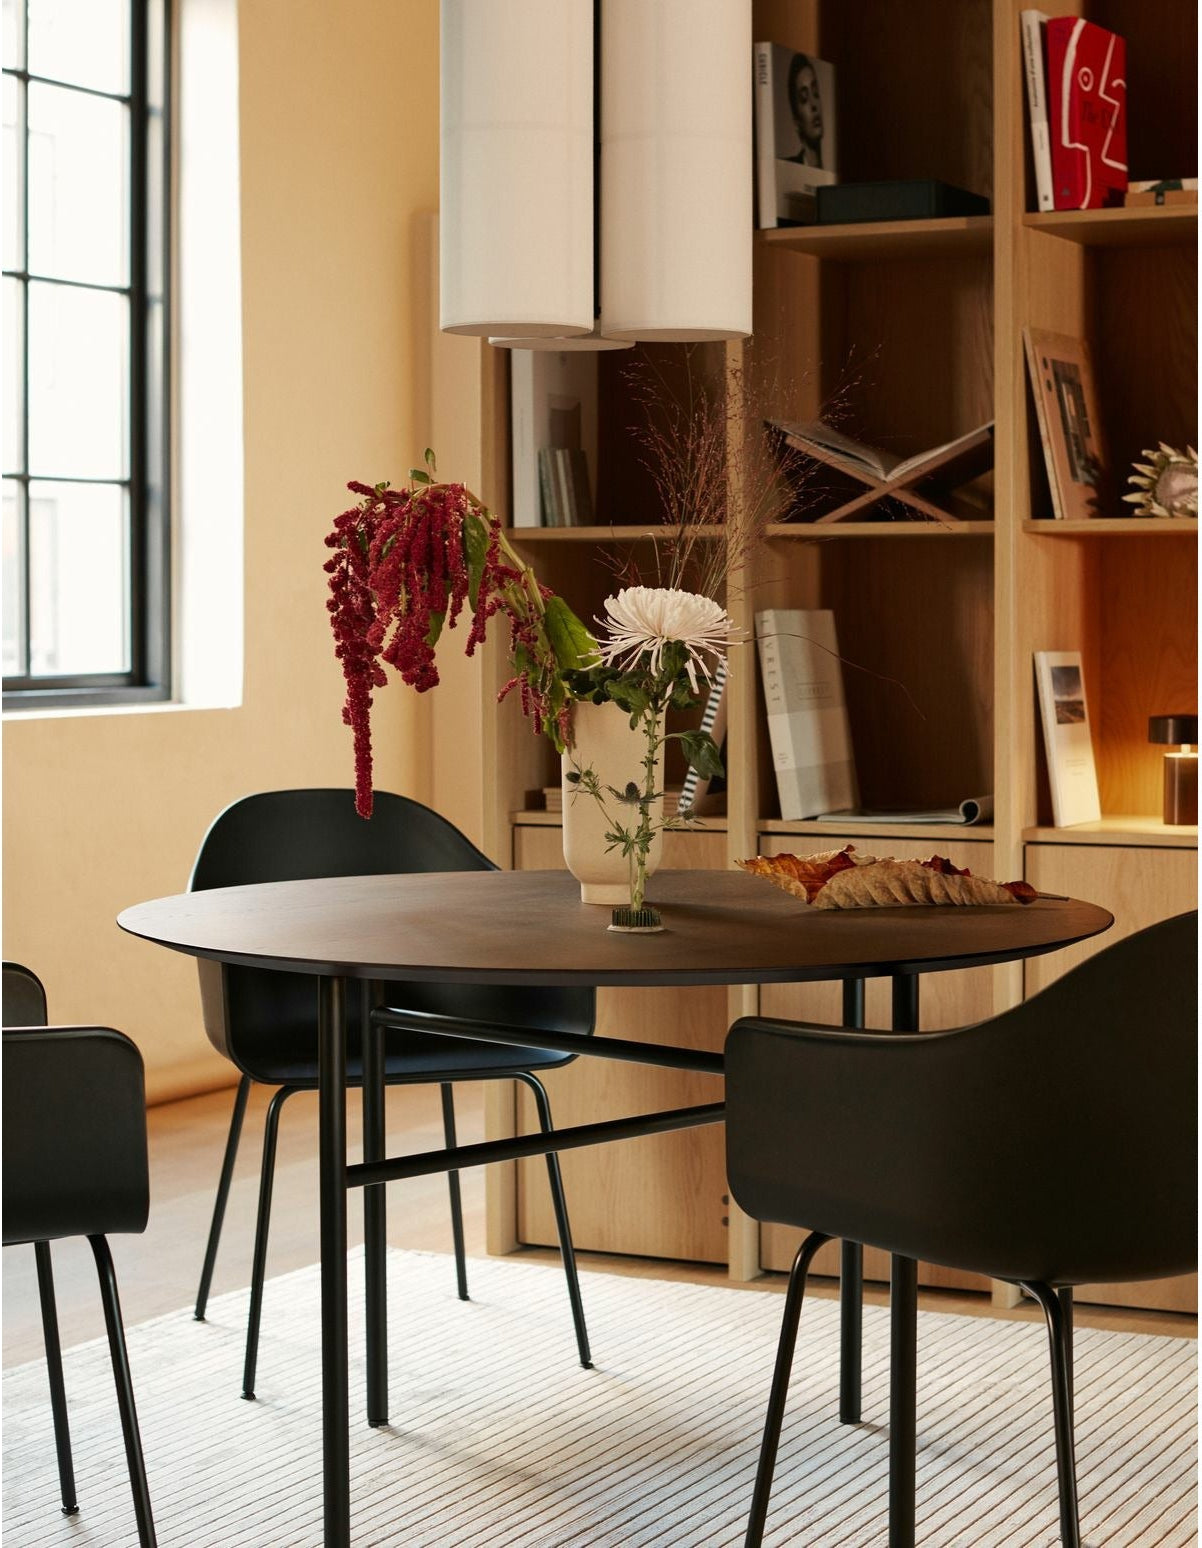 Audo Copenhagen Chaise de salle à manger portable en chaise naturelle, khaki